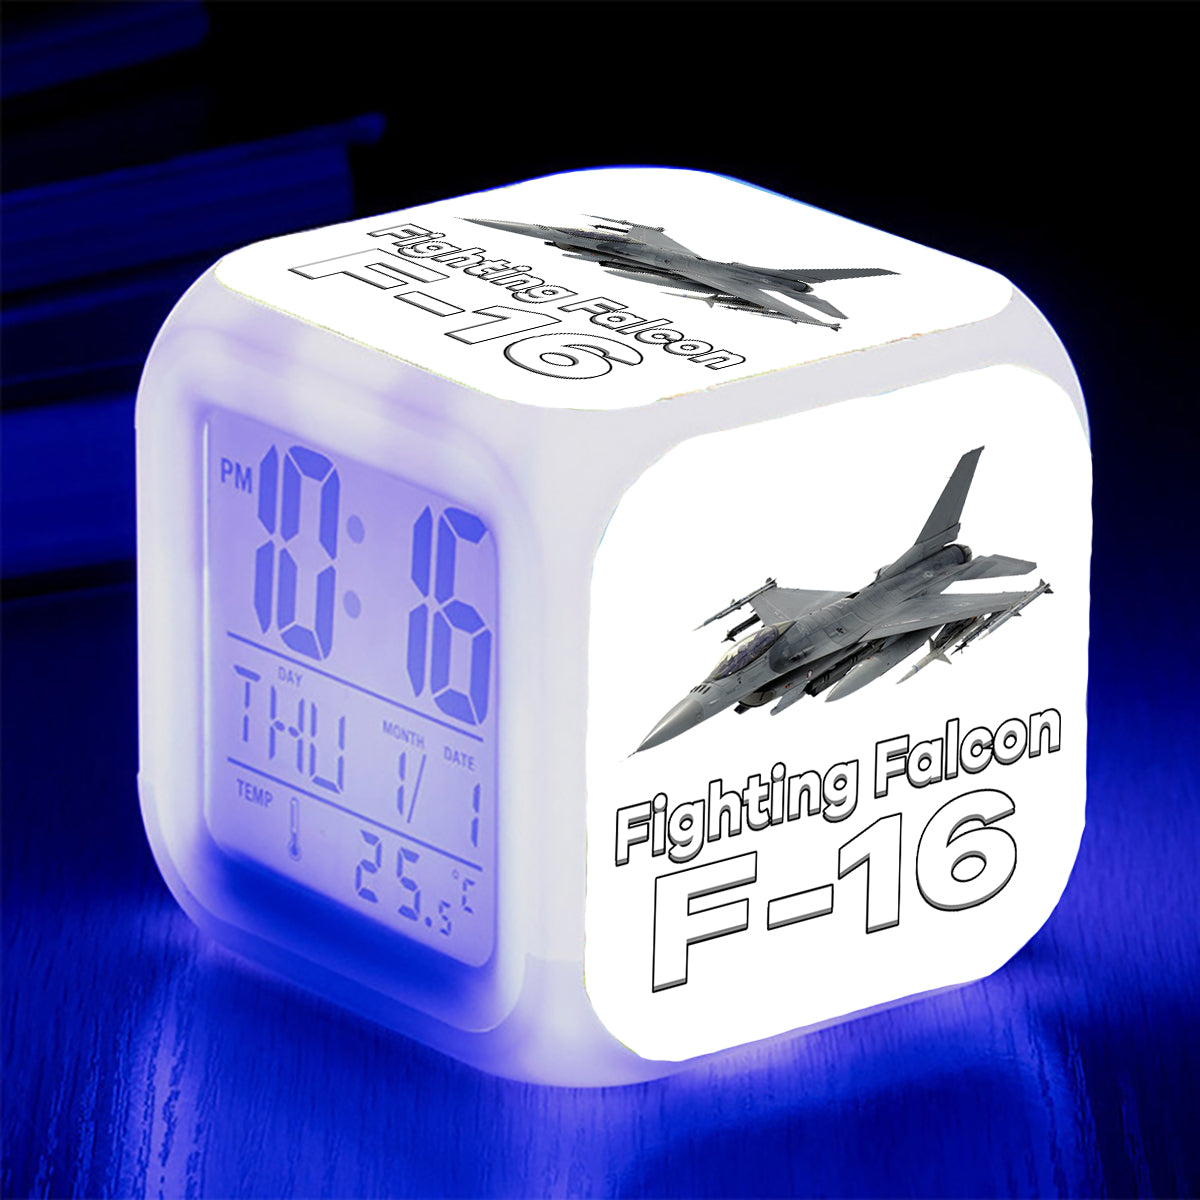 The Fighting Falcon F16 Designed "7 Colour" Digital Alarm Clock